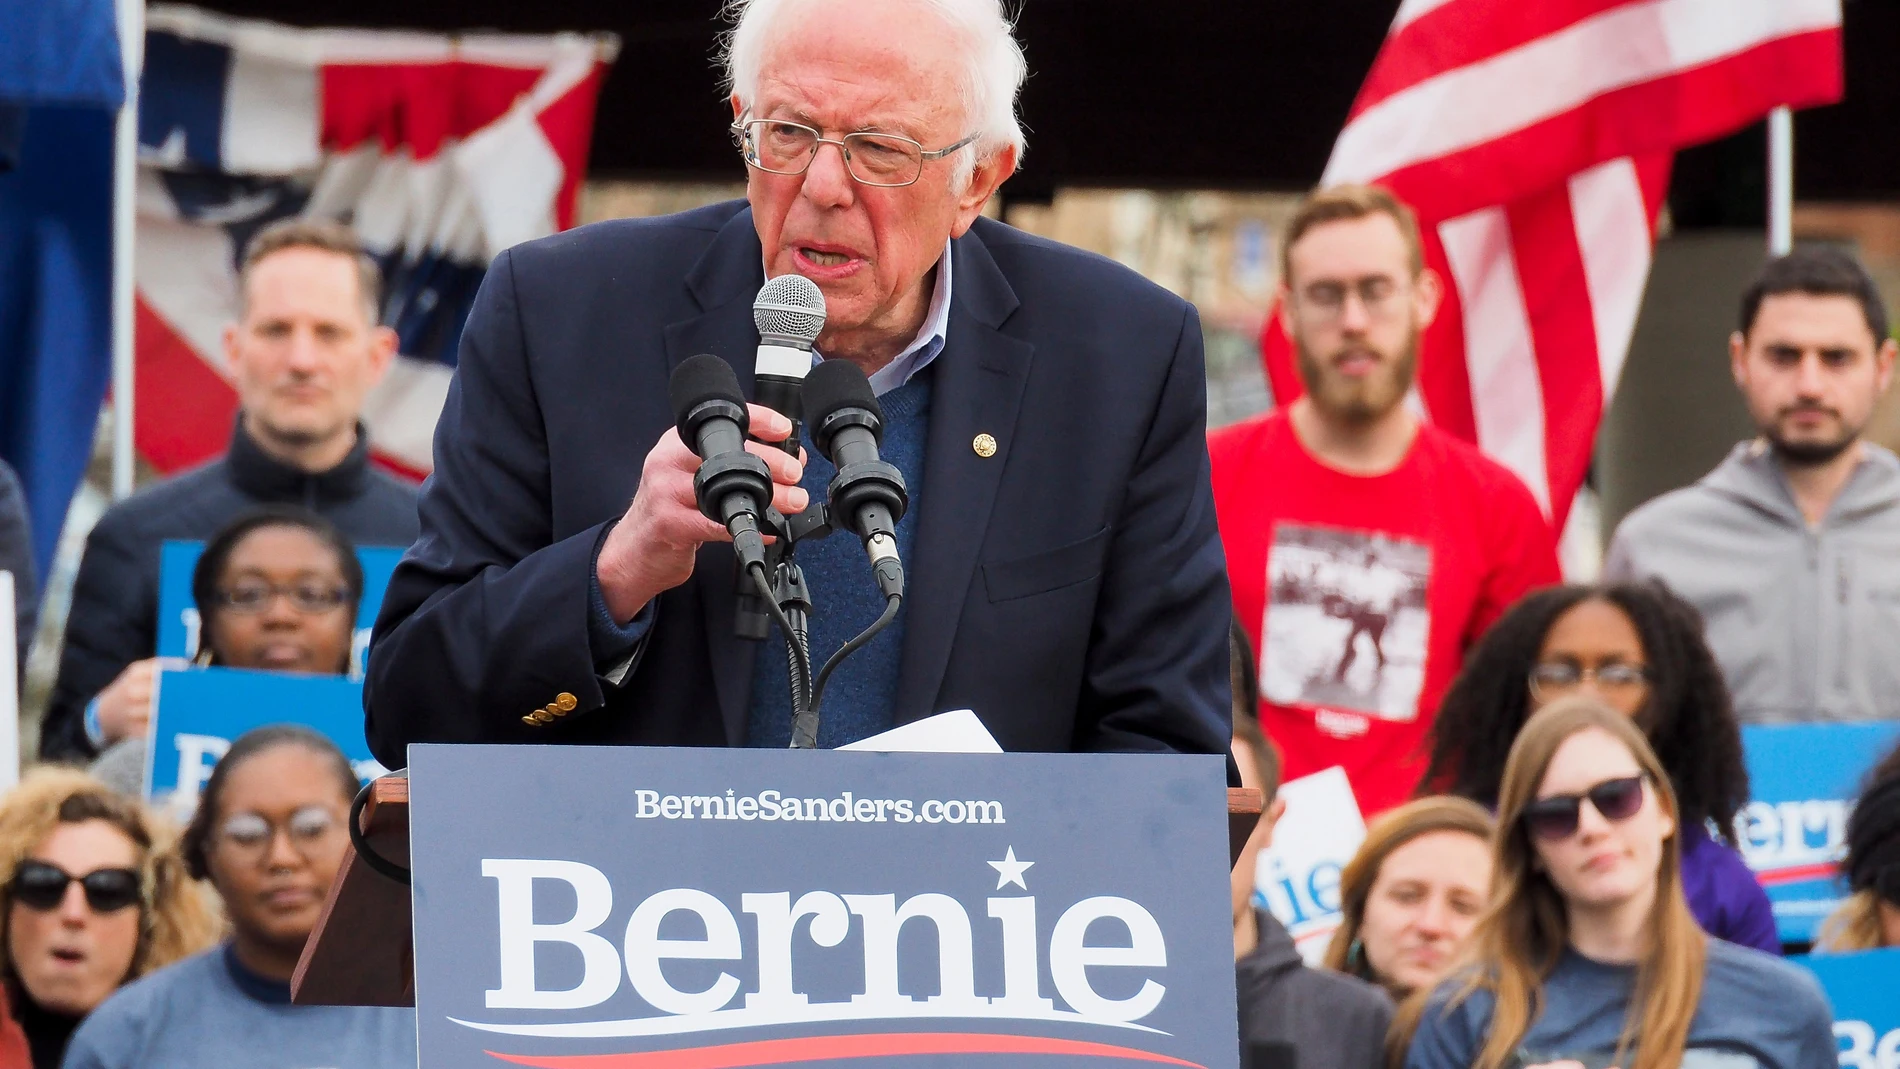 Bernie Sanders campaigns in South Carolina